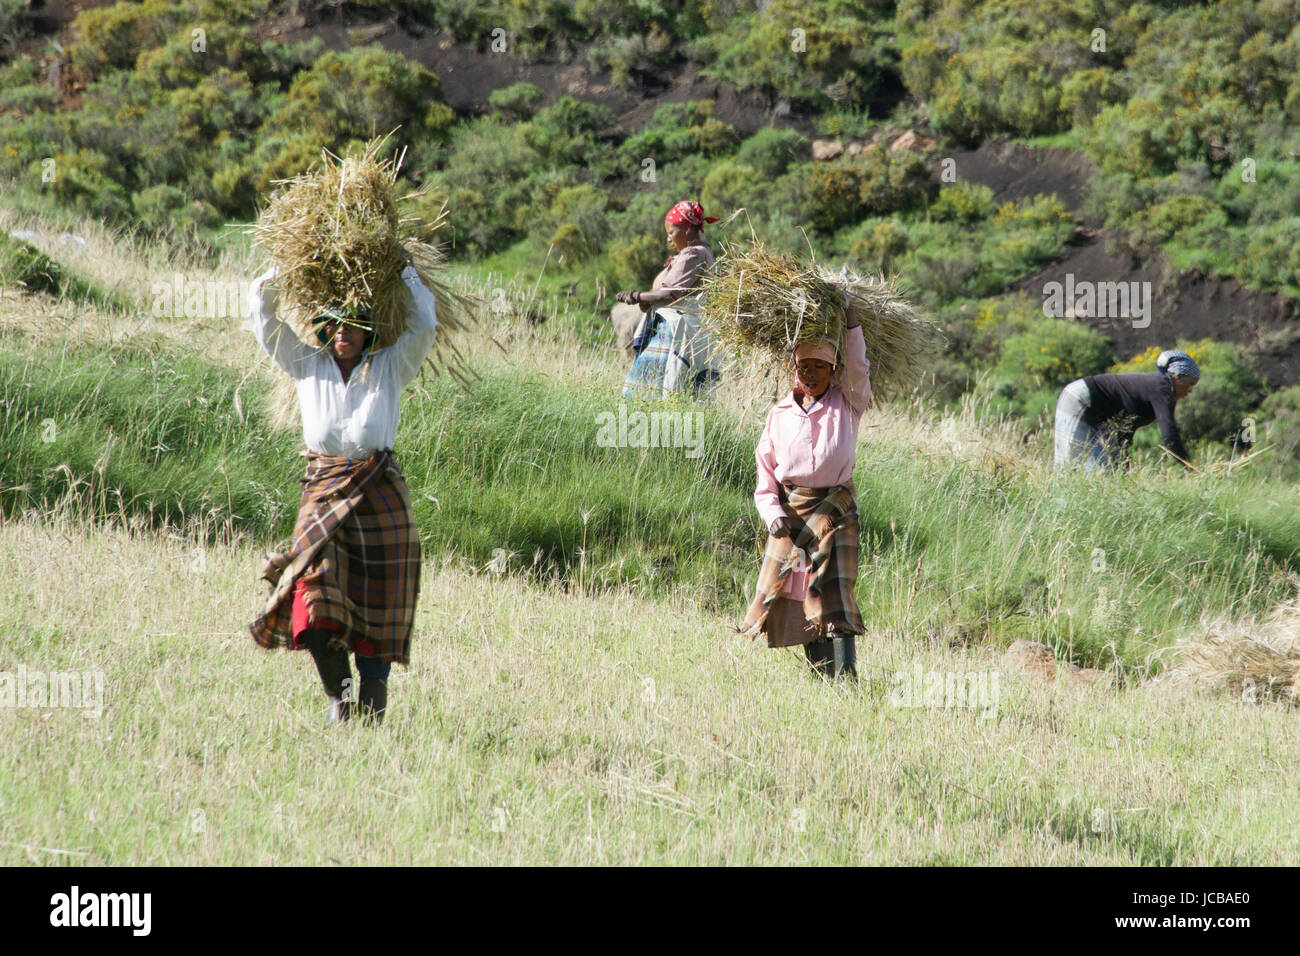 Des femmes portant des bottes de blé de l'Afrique australe Lesotho Highlands centrale Banque D'Images